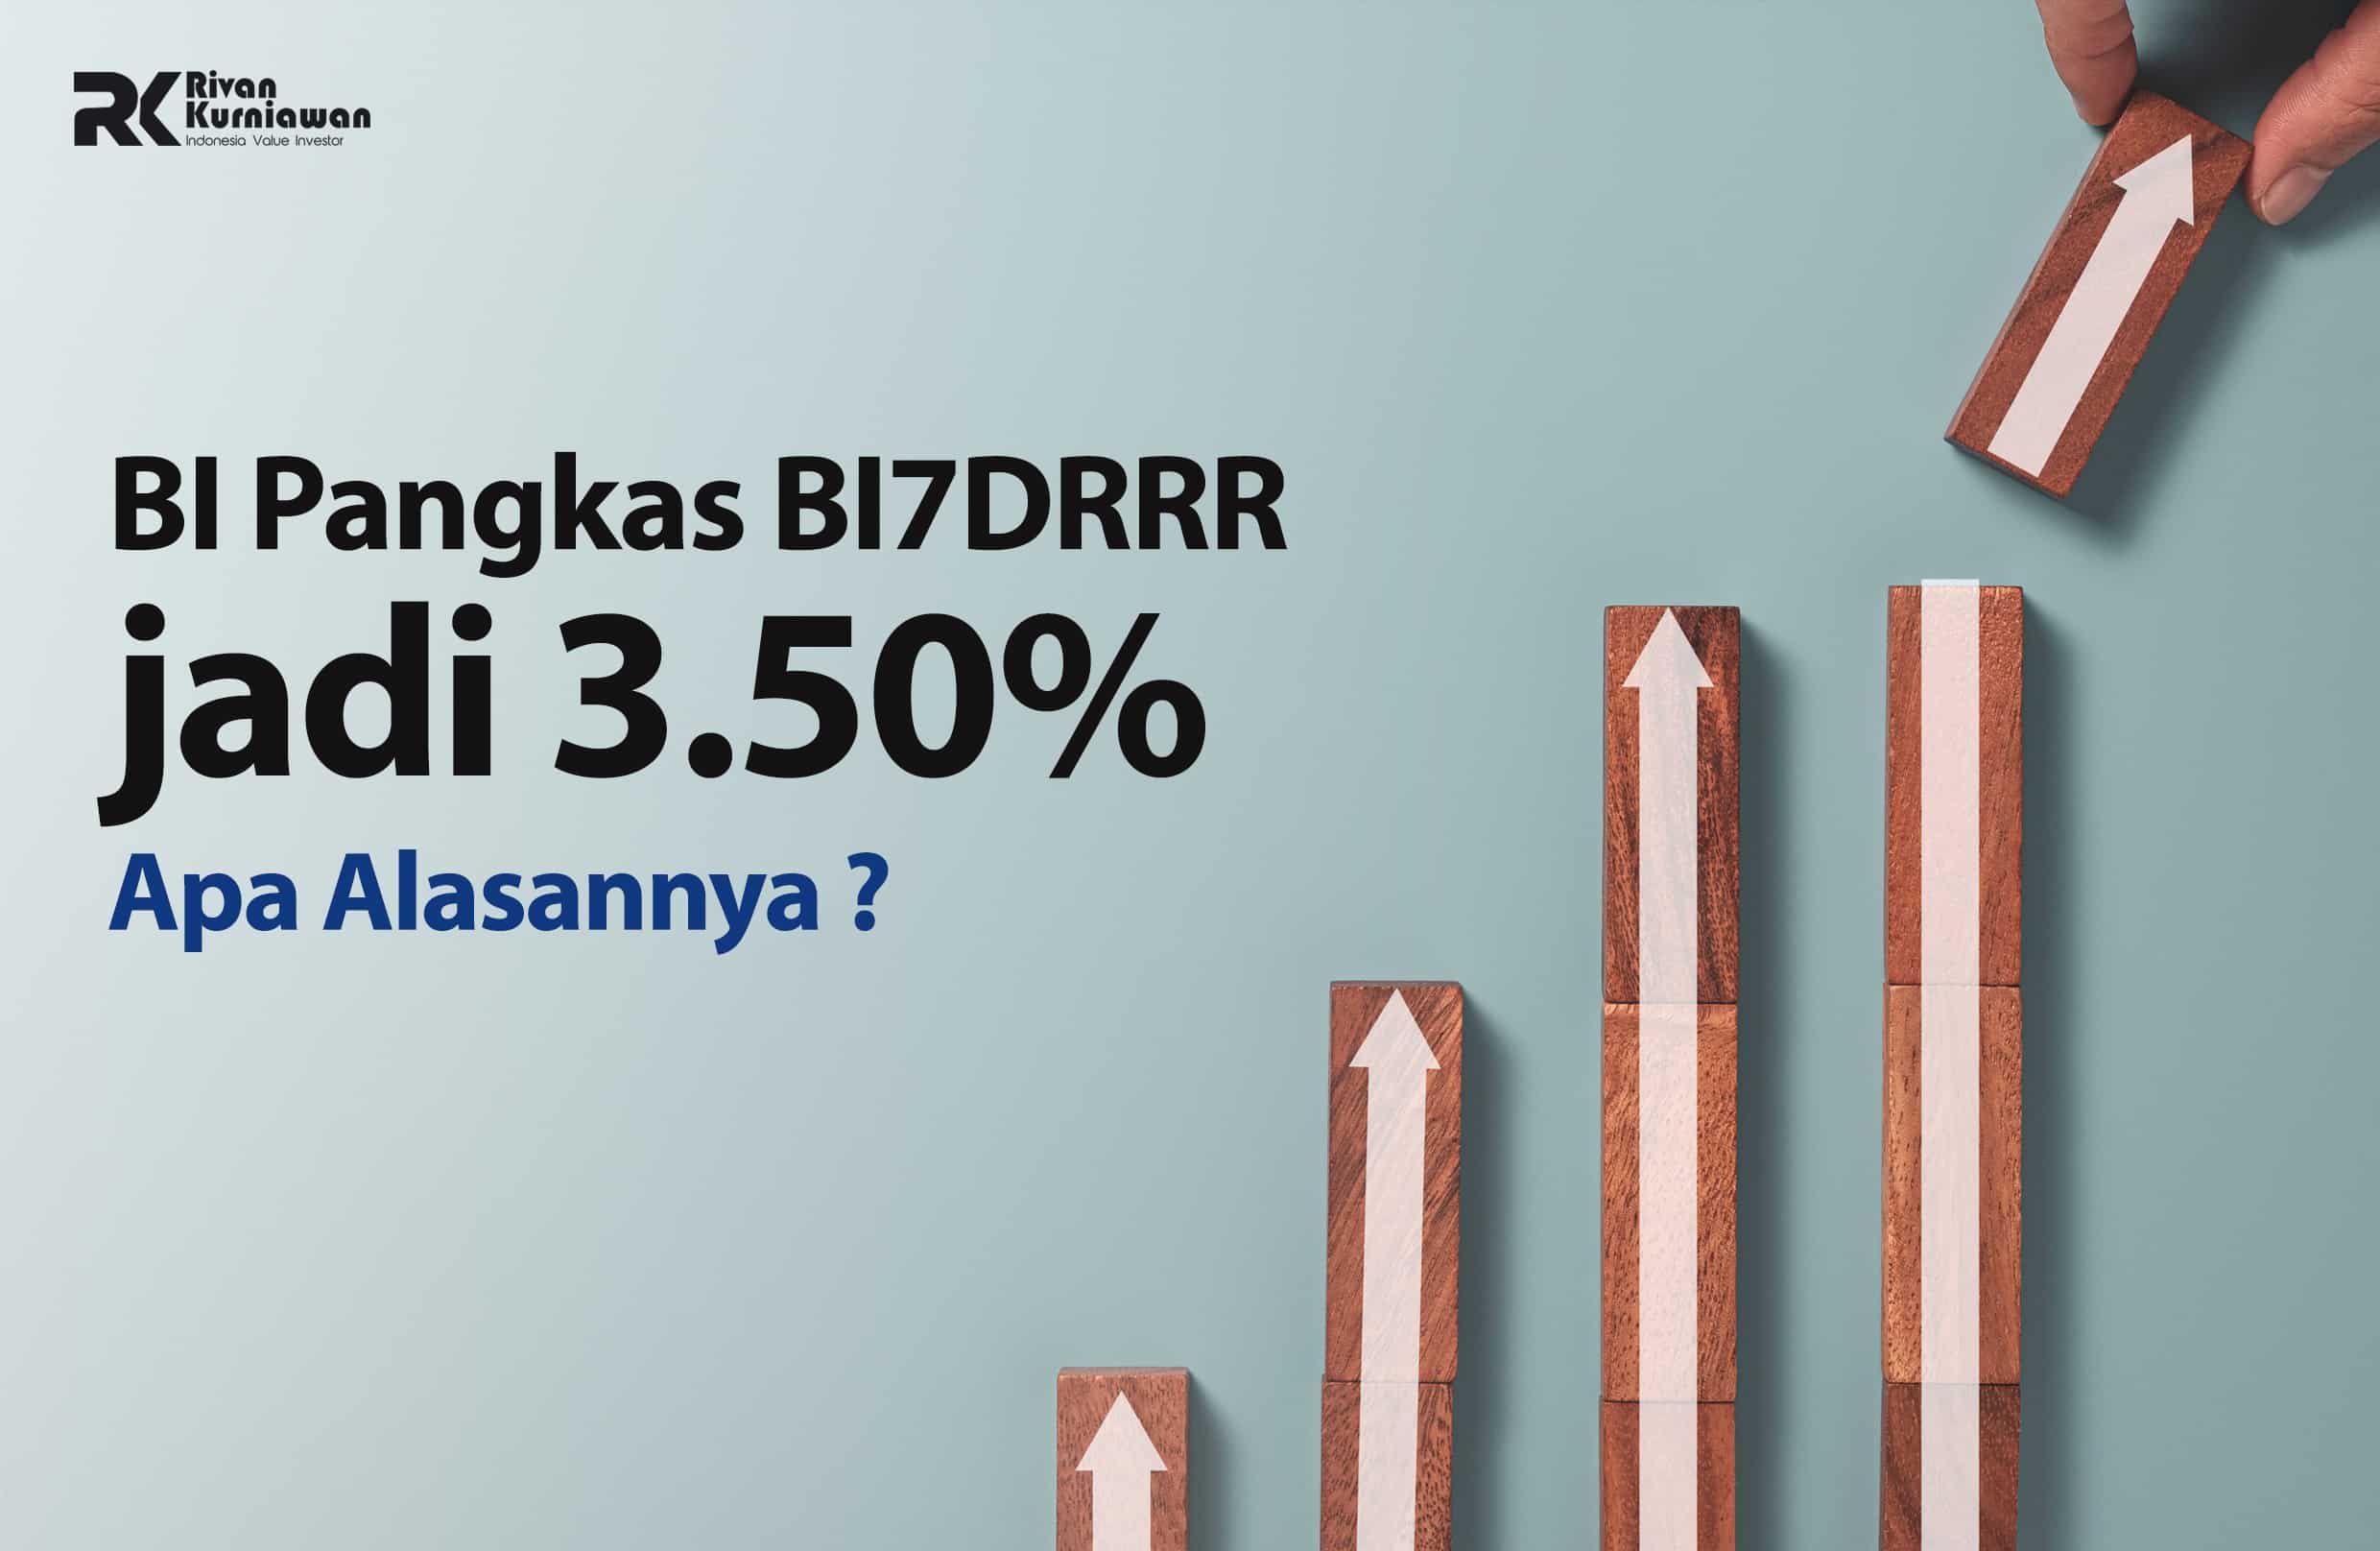 BI Pangkas BI7DRRR jadi 3.50%